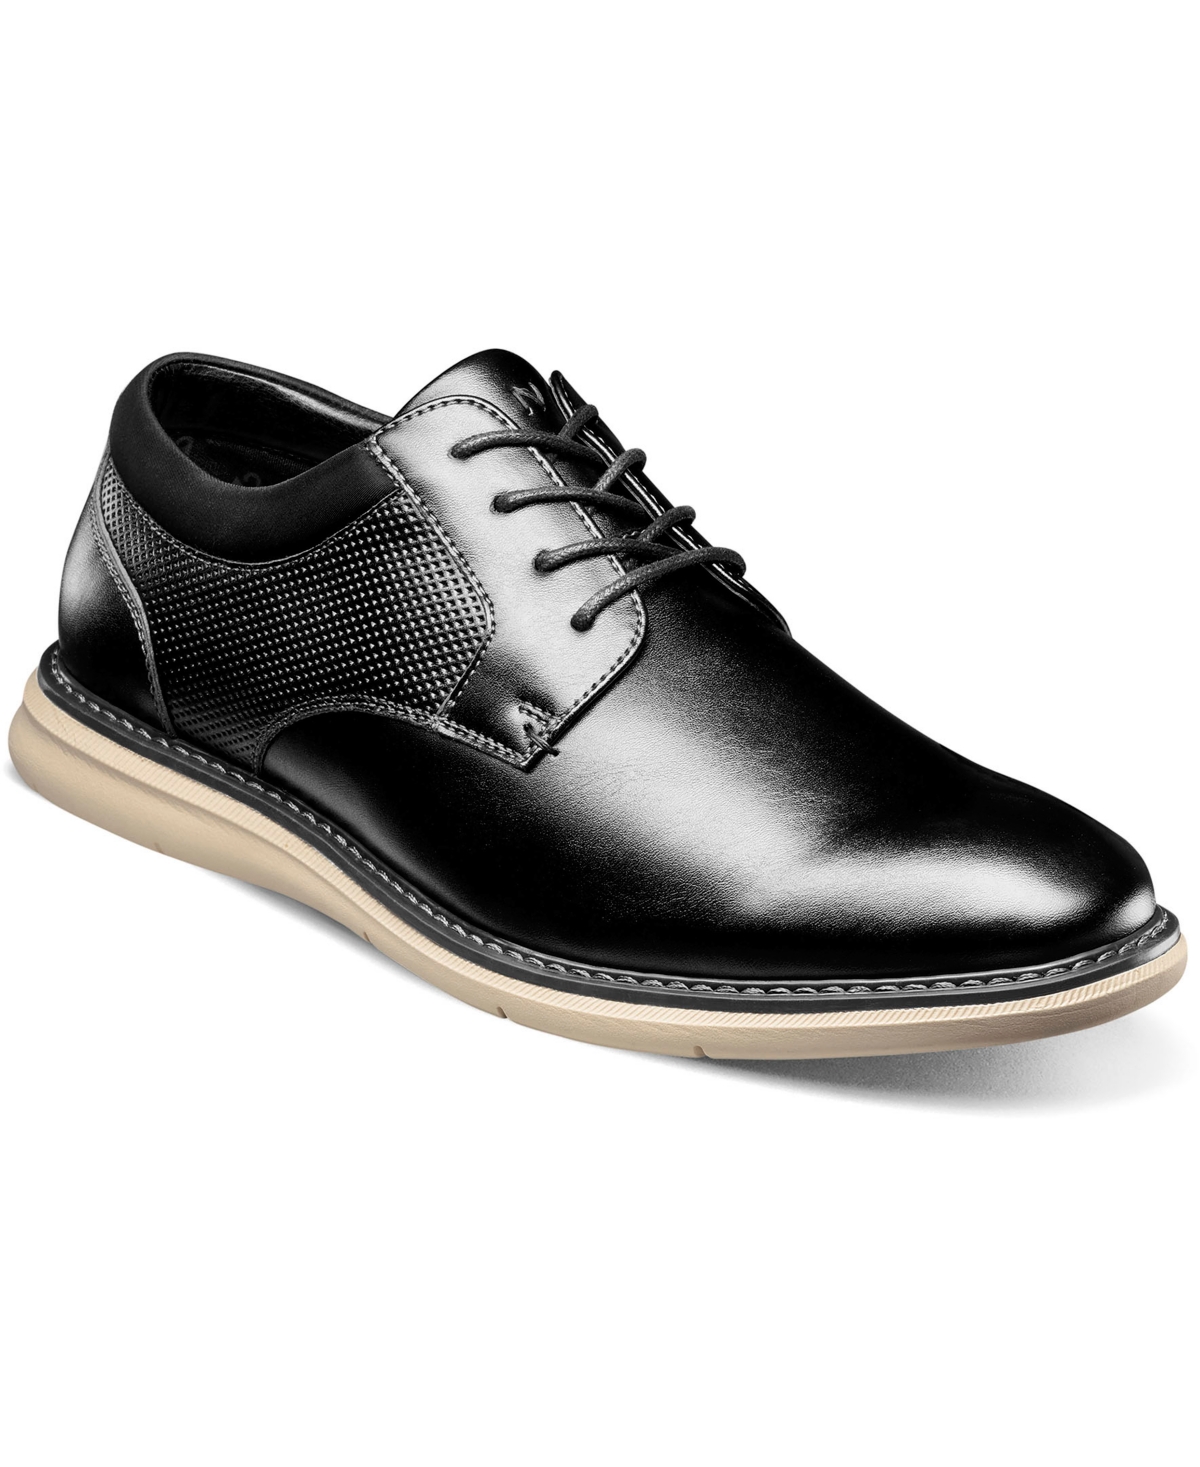 Men's Chase Plain Toe Oxford Shoes - Cognac Multi